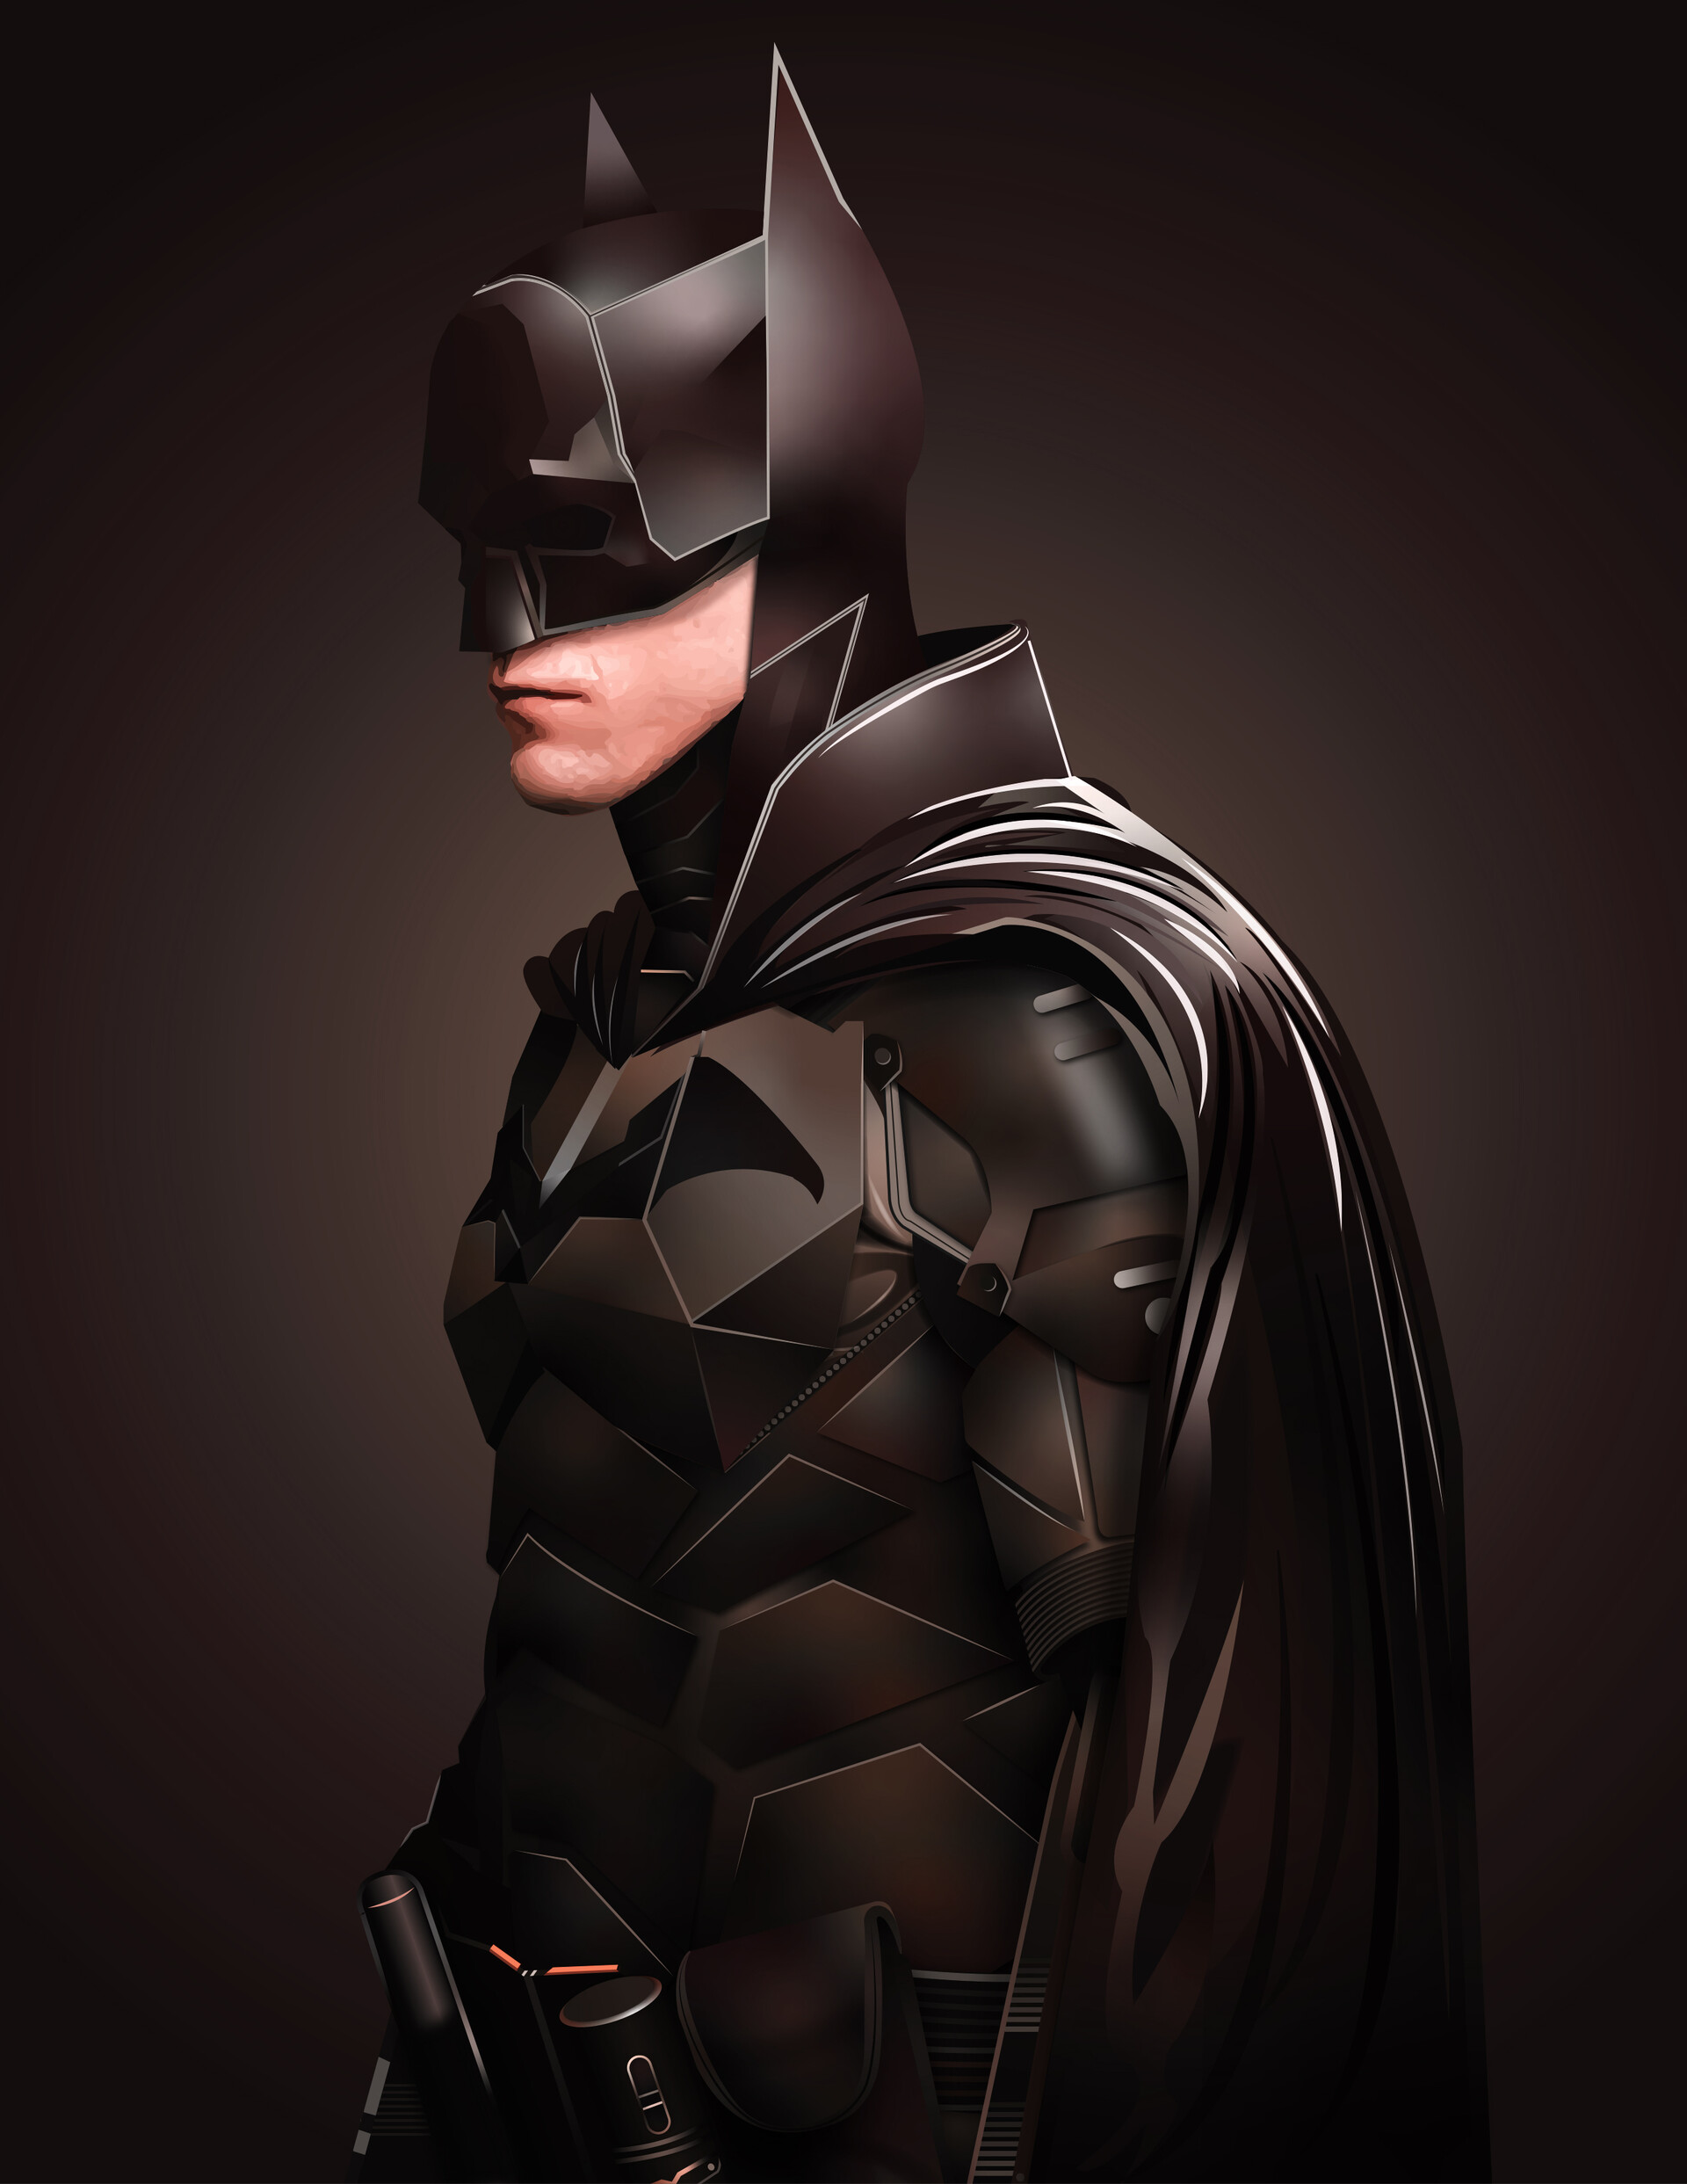 ArtStation - Batman illustration